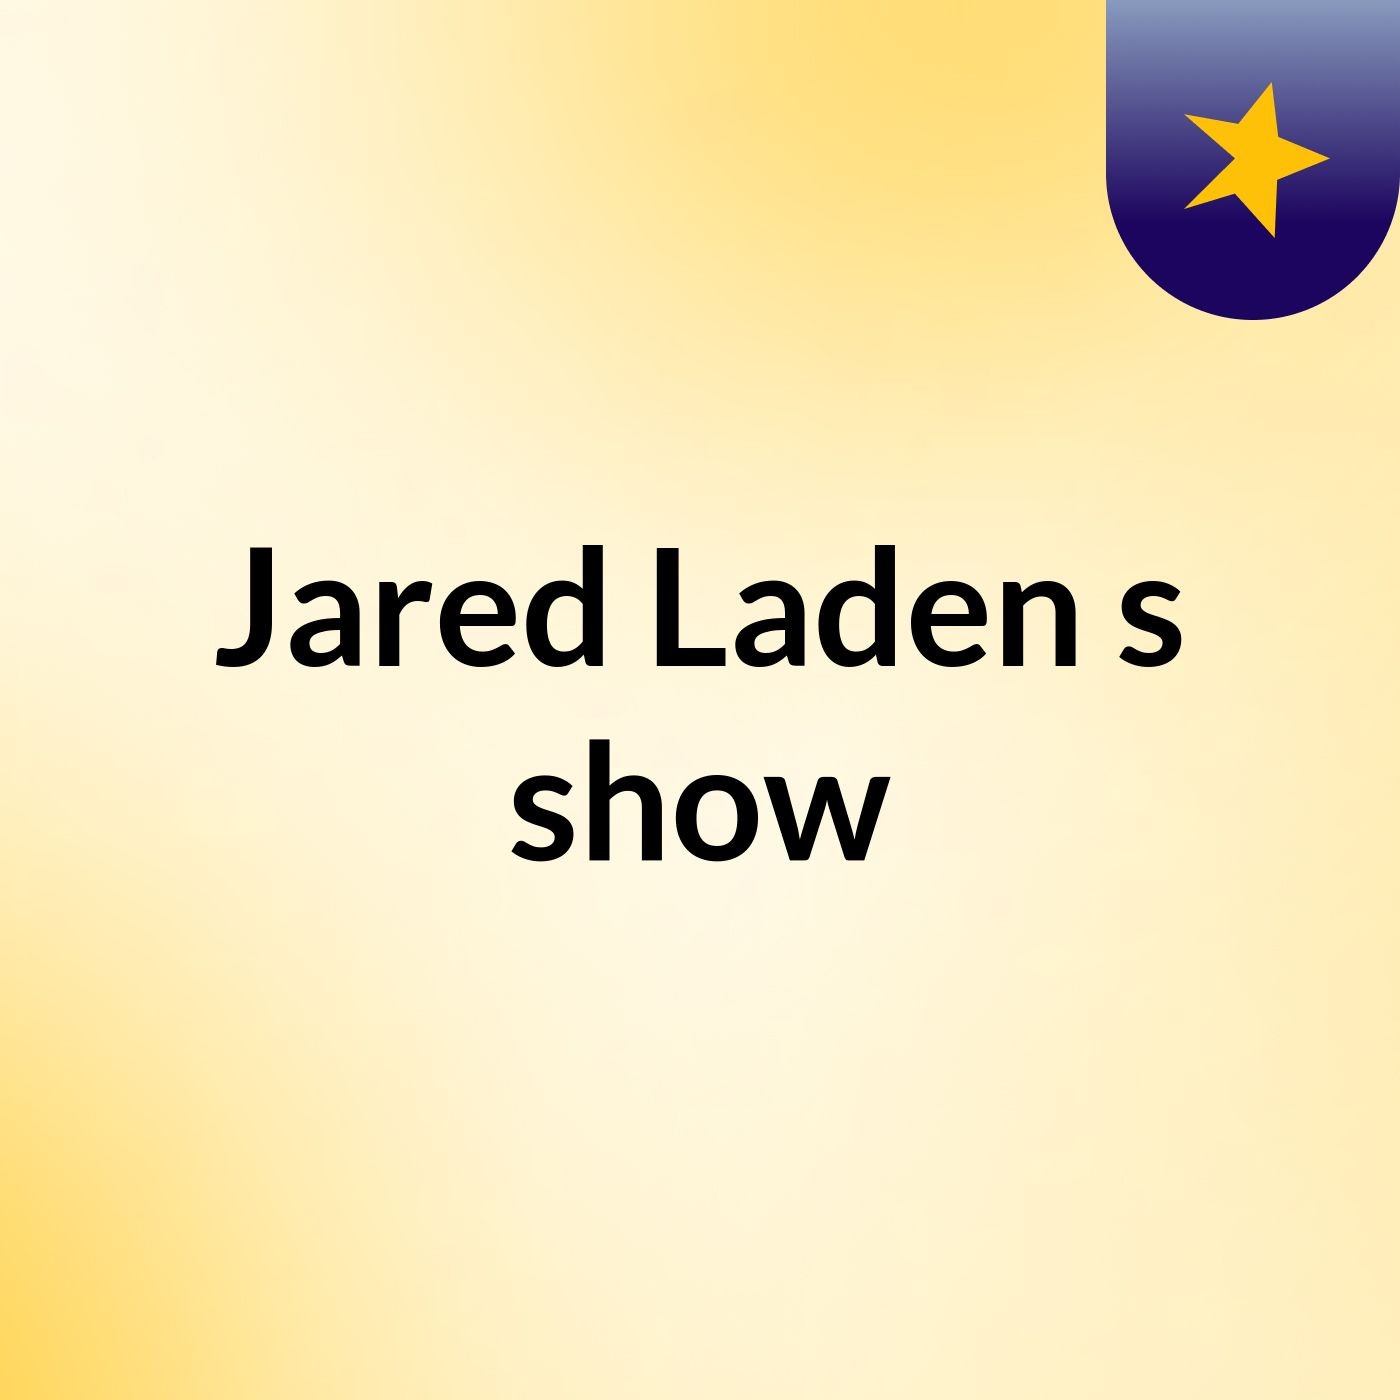 Jared Laden's show